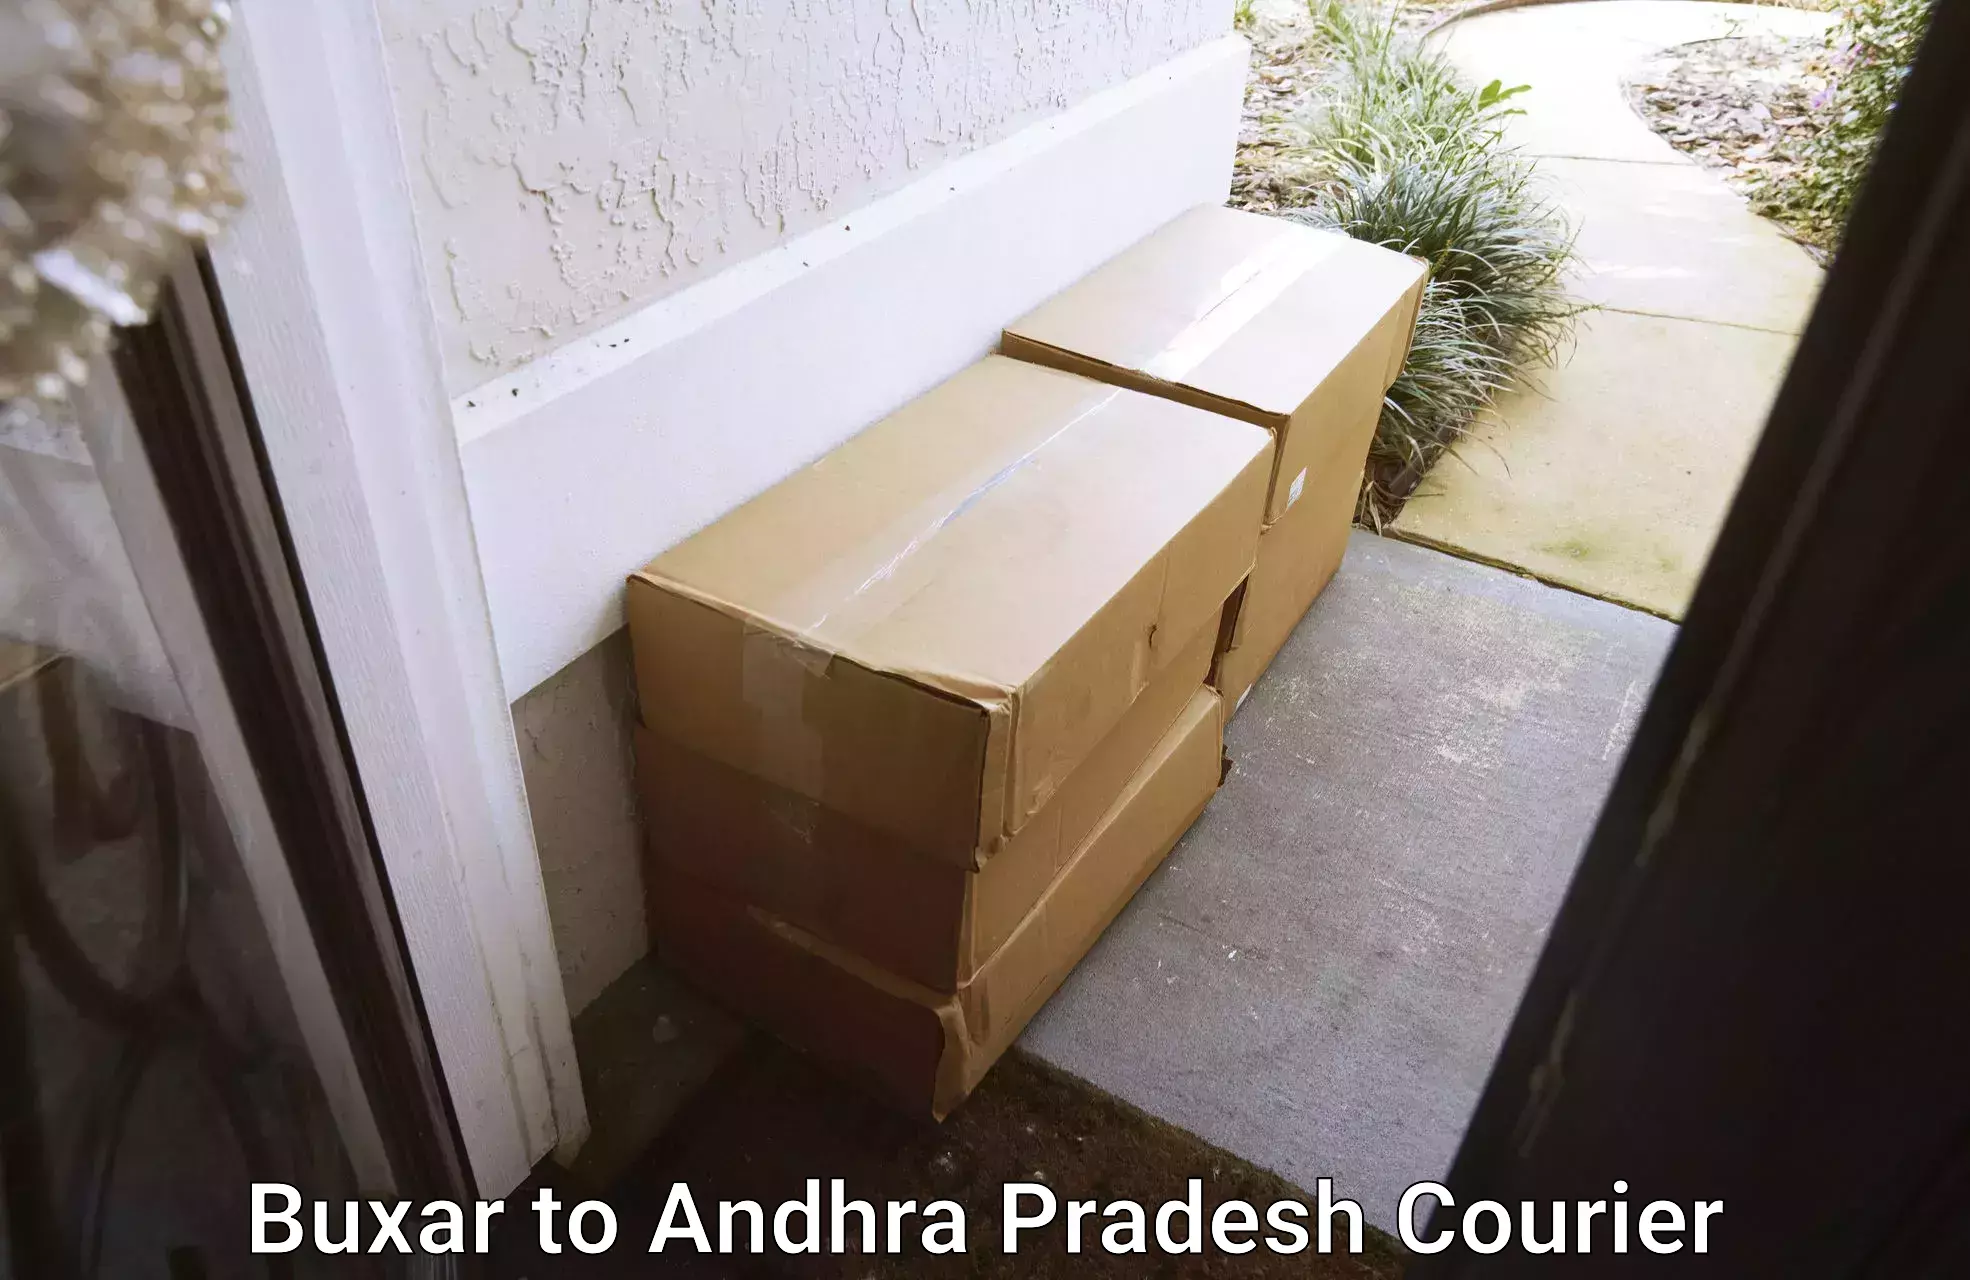 Furniture moving service Buxar to Andhra Pradesh